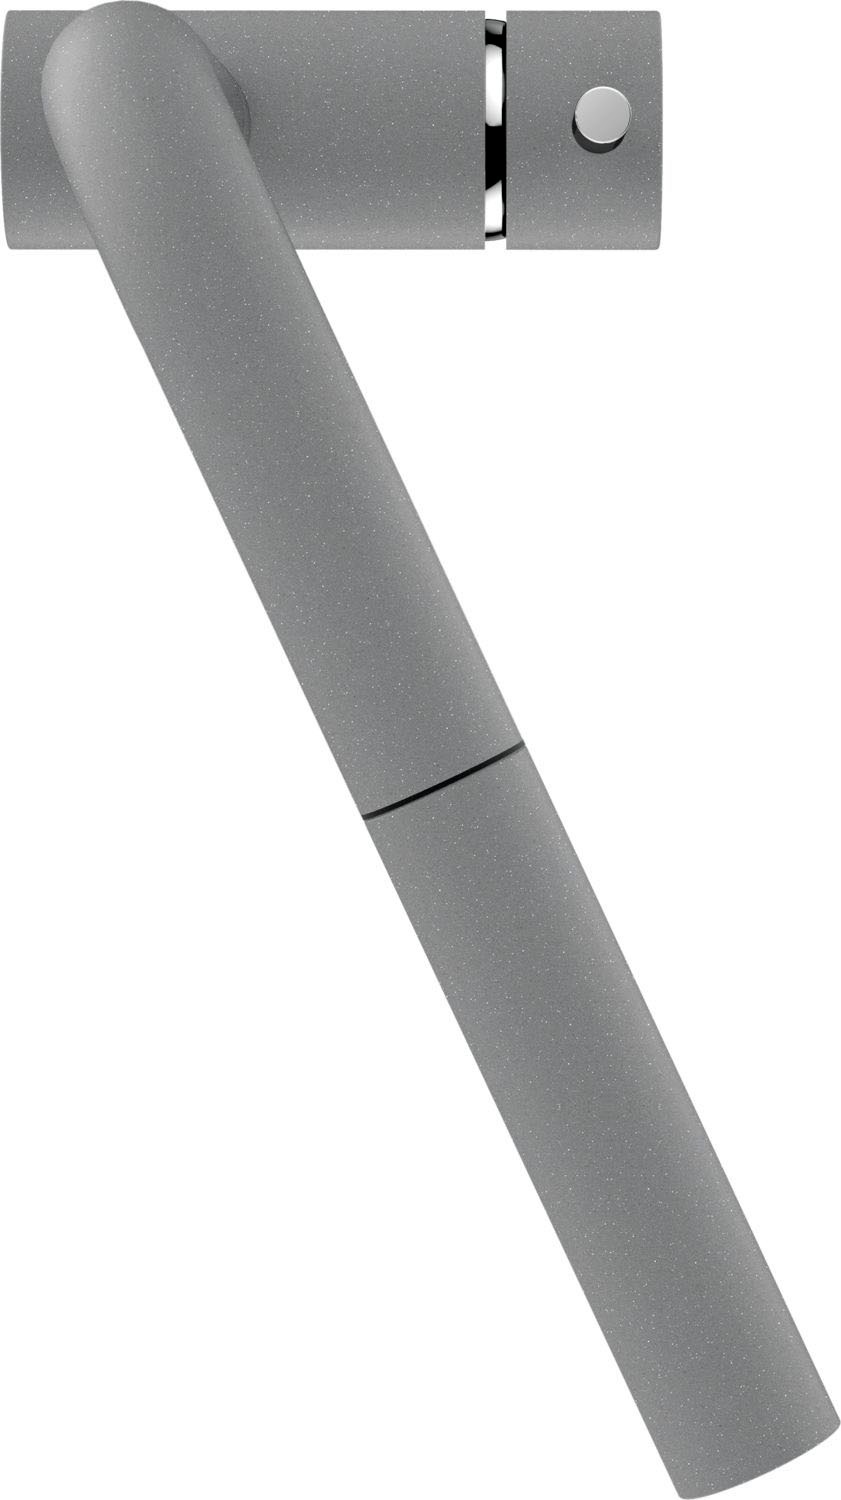 Schock Küchenarmatur »EPOS SB«, ausziehbar, Rückflussverhinderer,Wasserspar-Perlator, Schwenkber. 180°